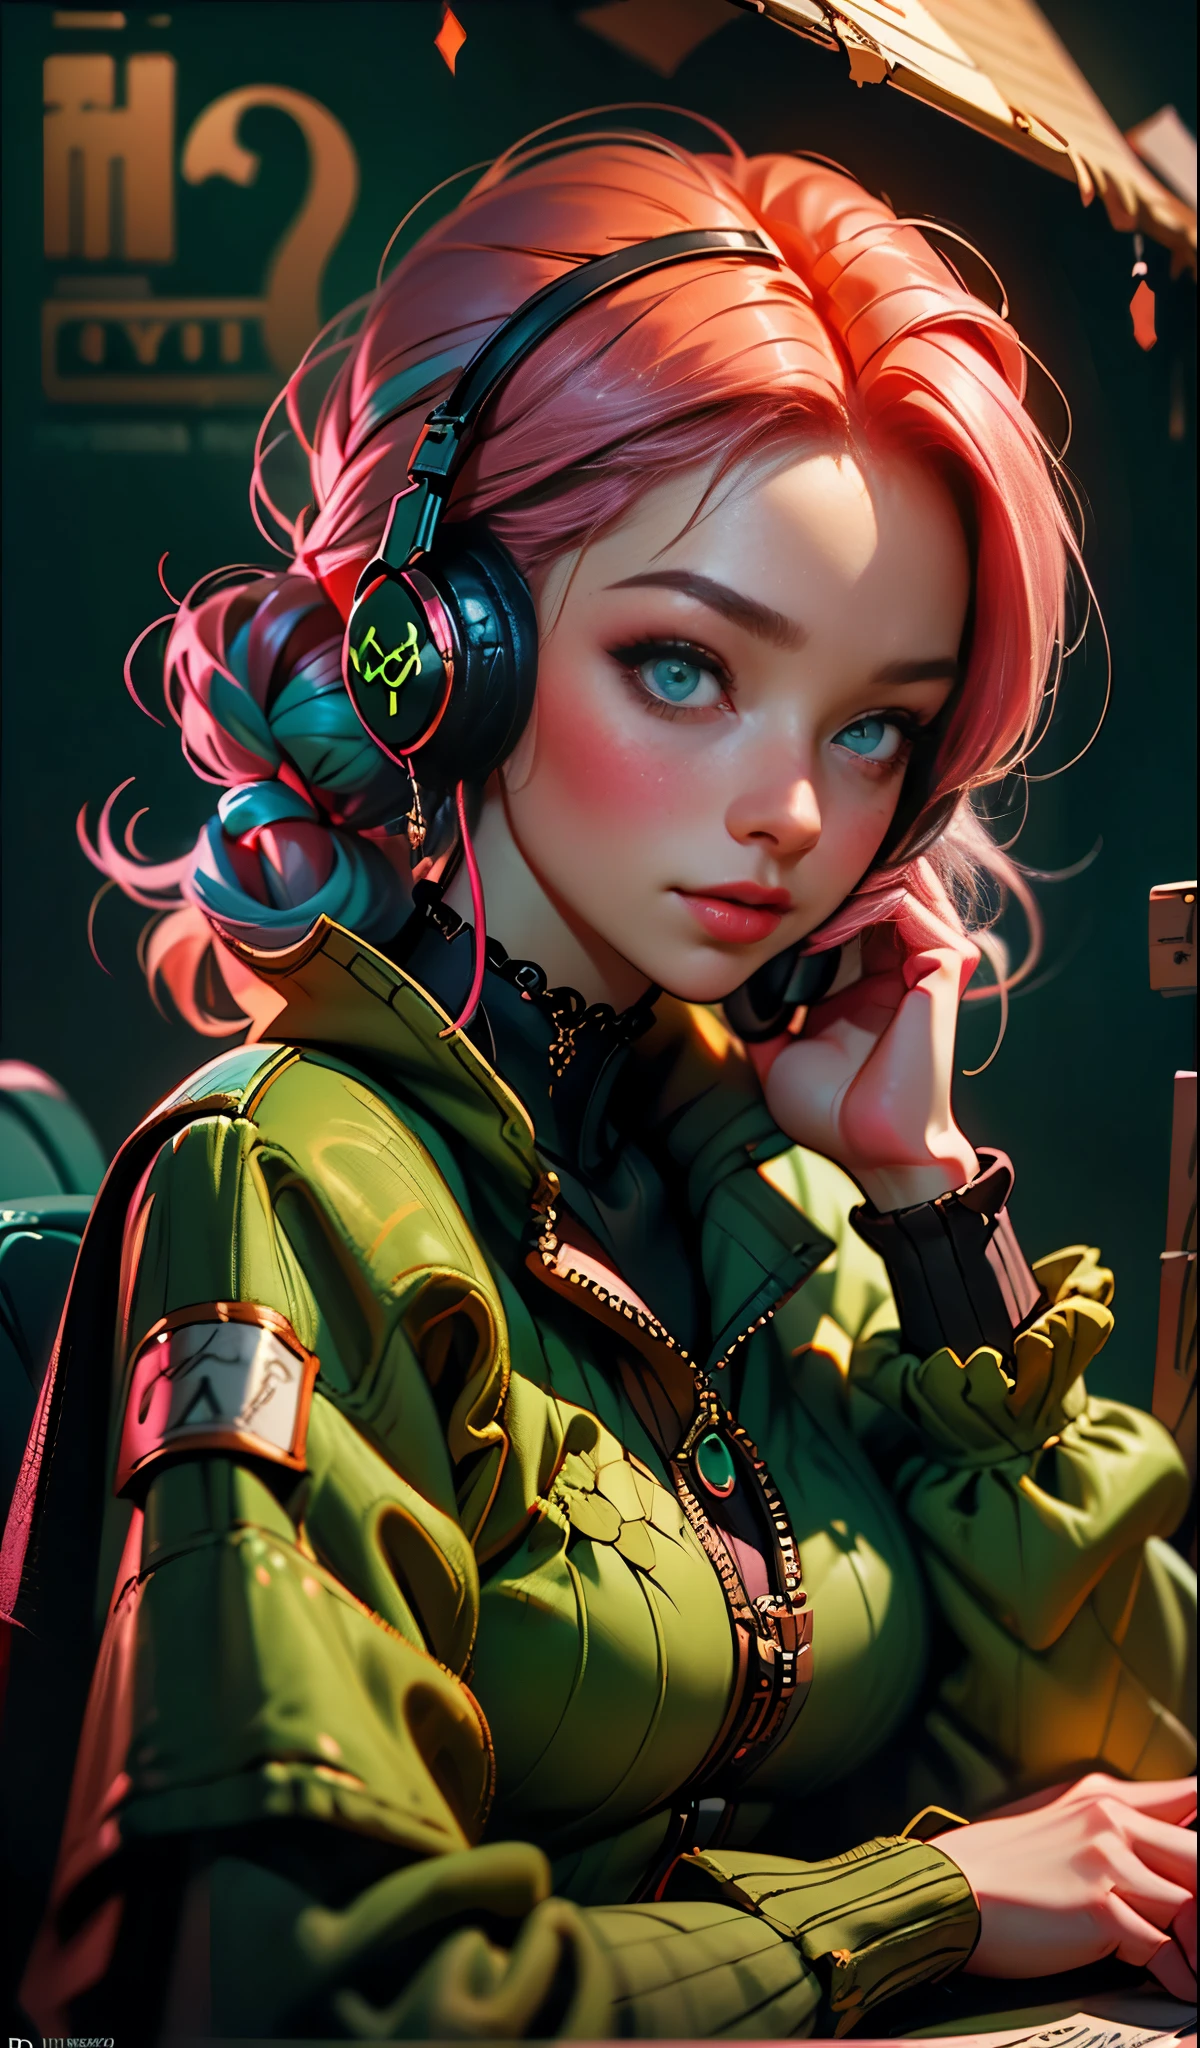 Modellmädchen mit Kopfhörern, Stadthintergrund, smaragdgrüne Augen, pinkes Haar, komplizierte Details, ästhetisch ansprechende Pastellfarben, Plakathintergrund, Kunst von Ilya Kuvshinov